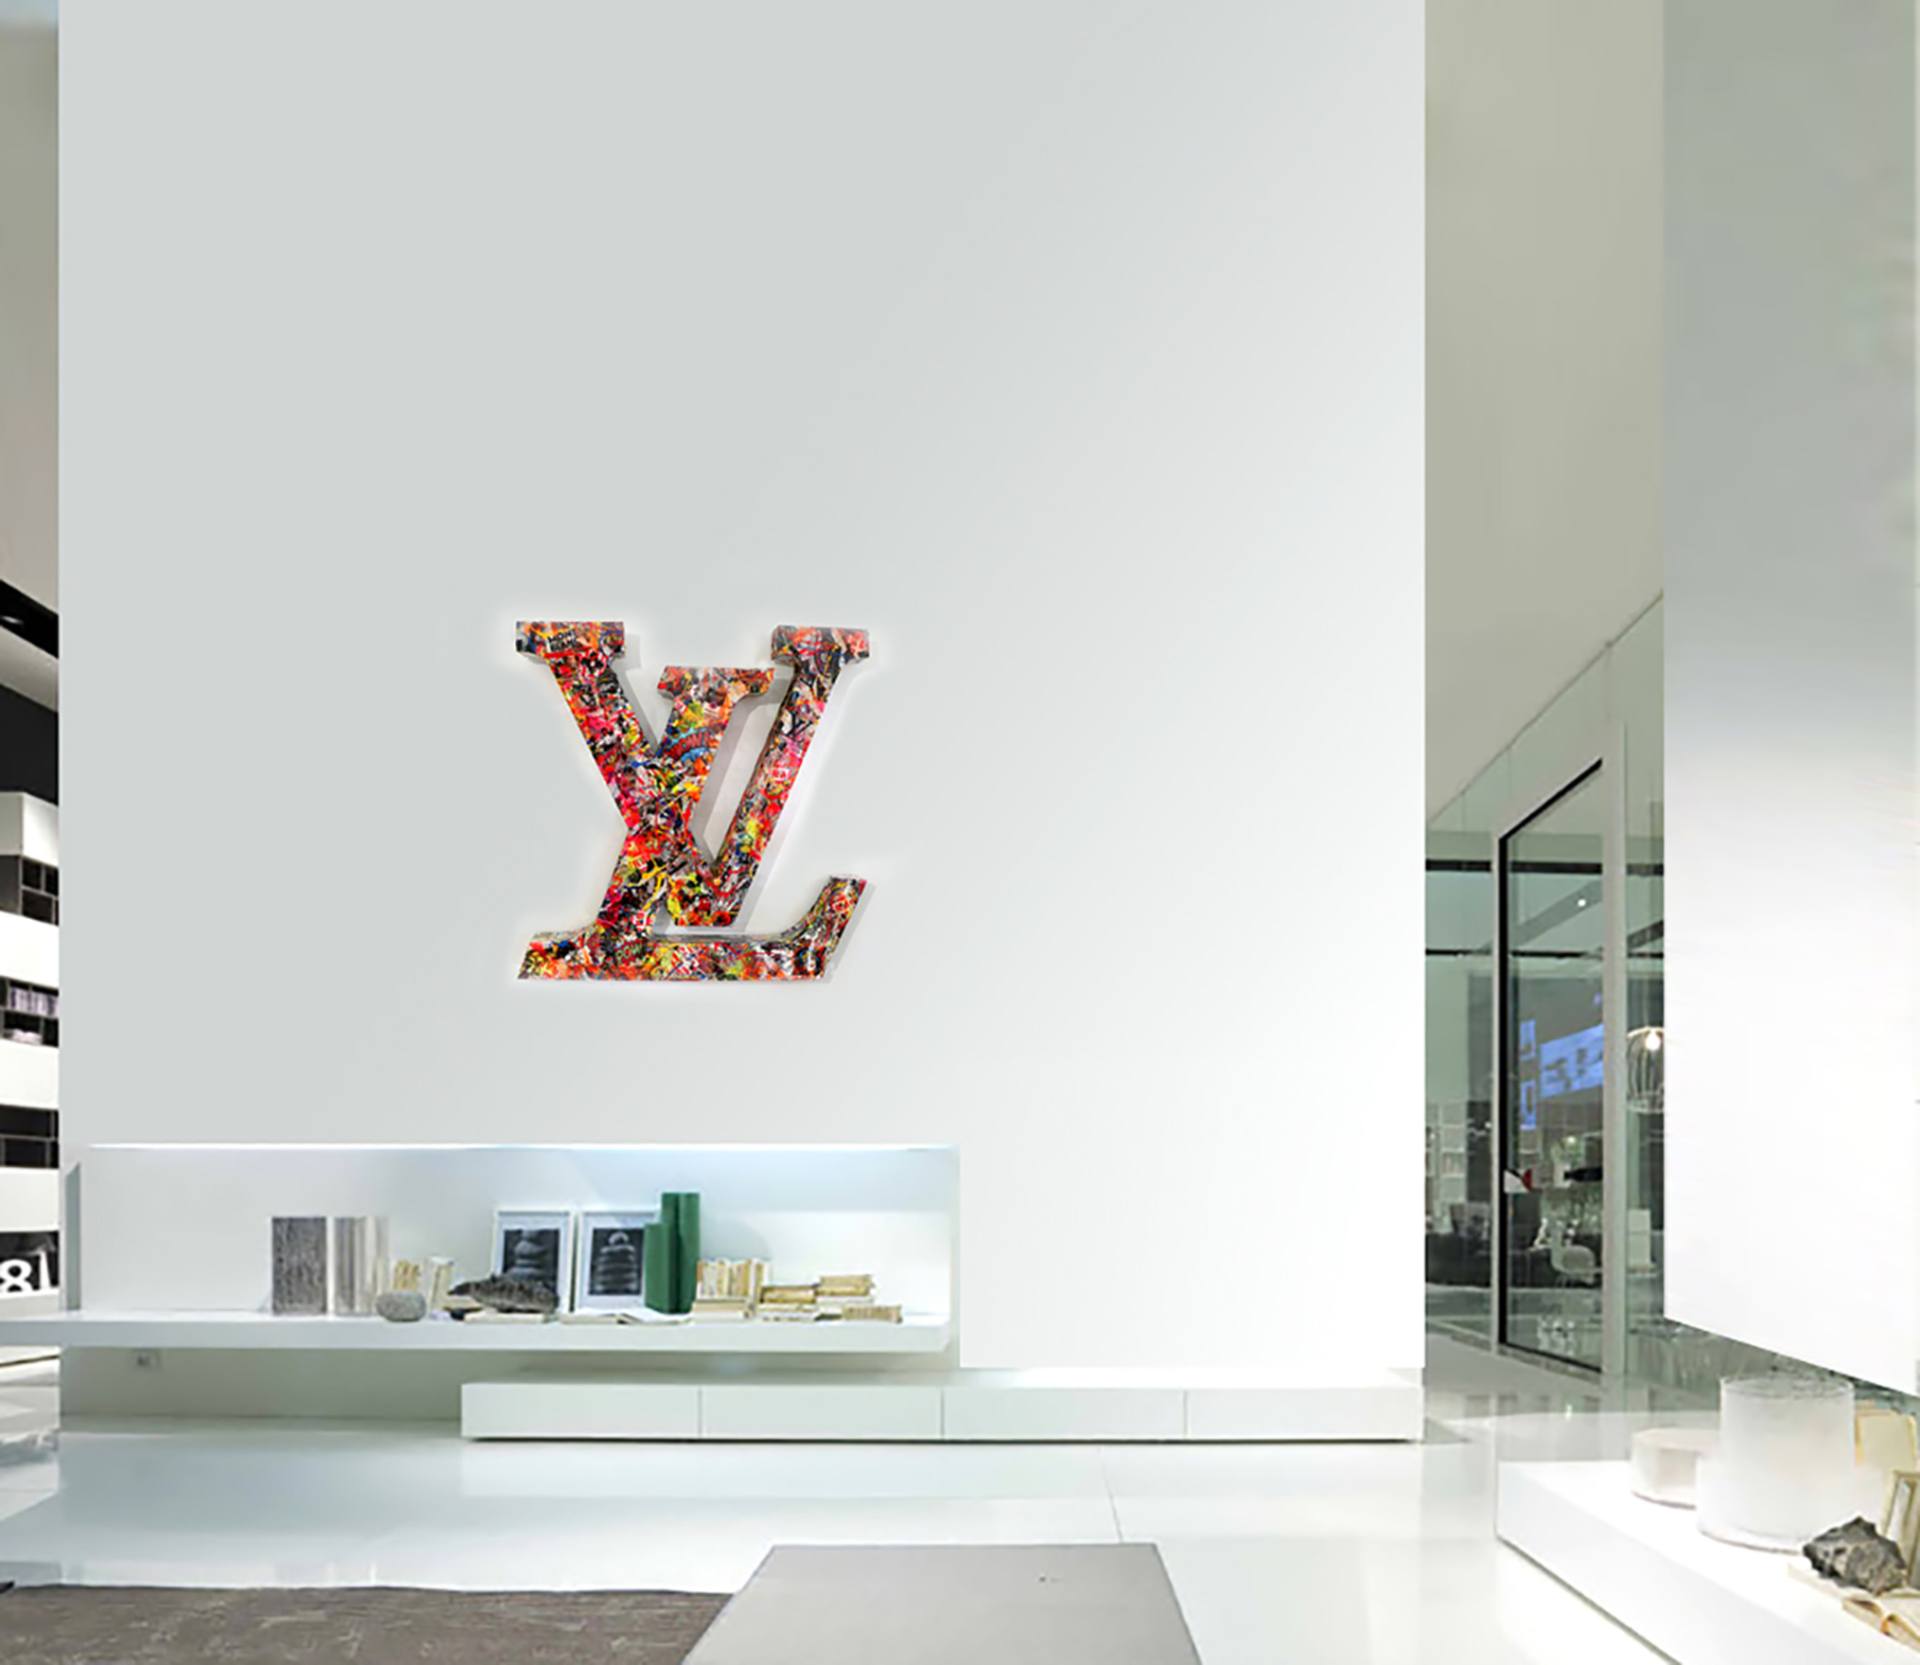  Vuitton Wall Art, Vuitton Wall Decor, Vuitton Store